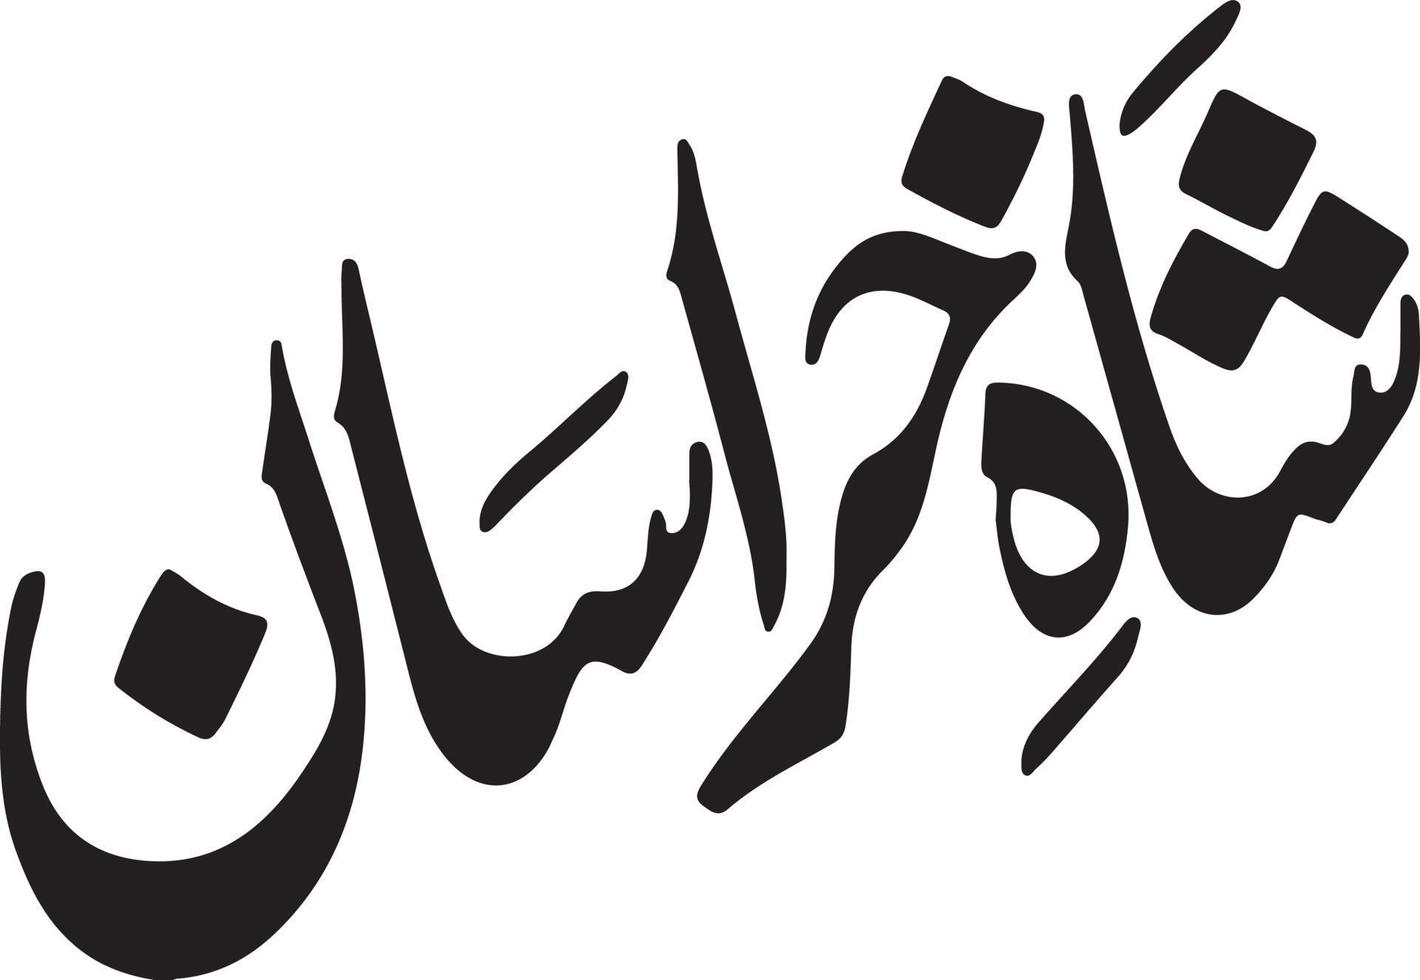 saha kherasan título islámico urdu árabe caligrafía vector libre